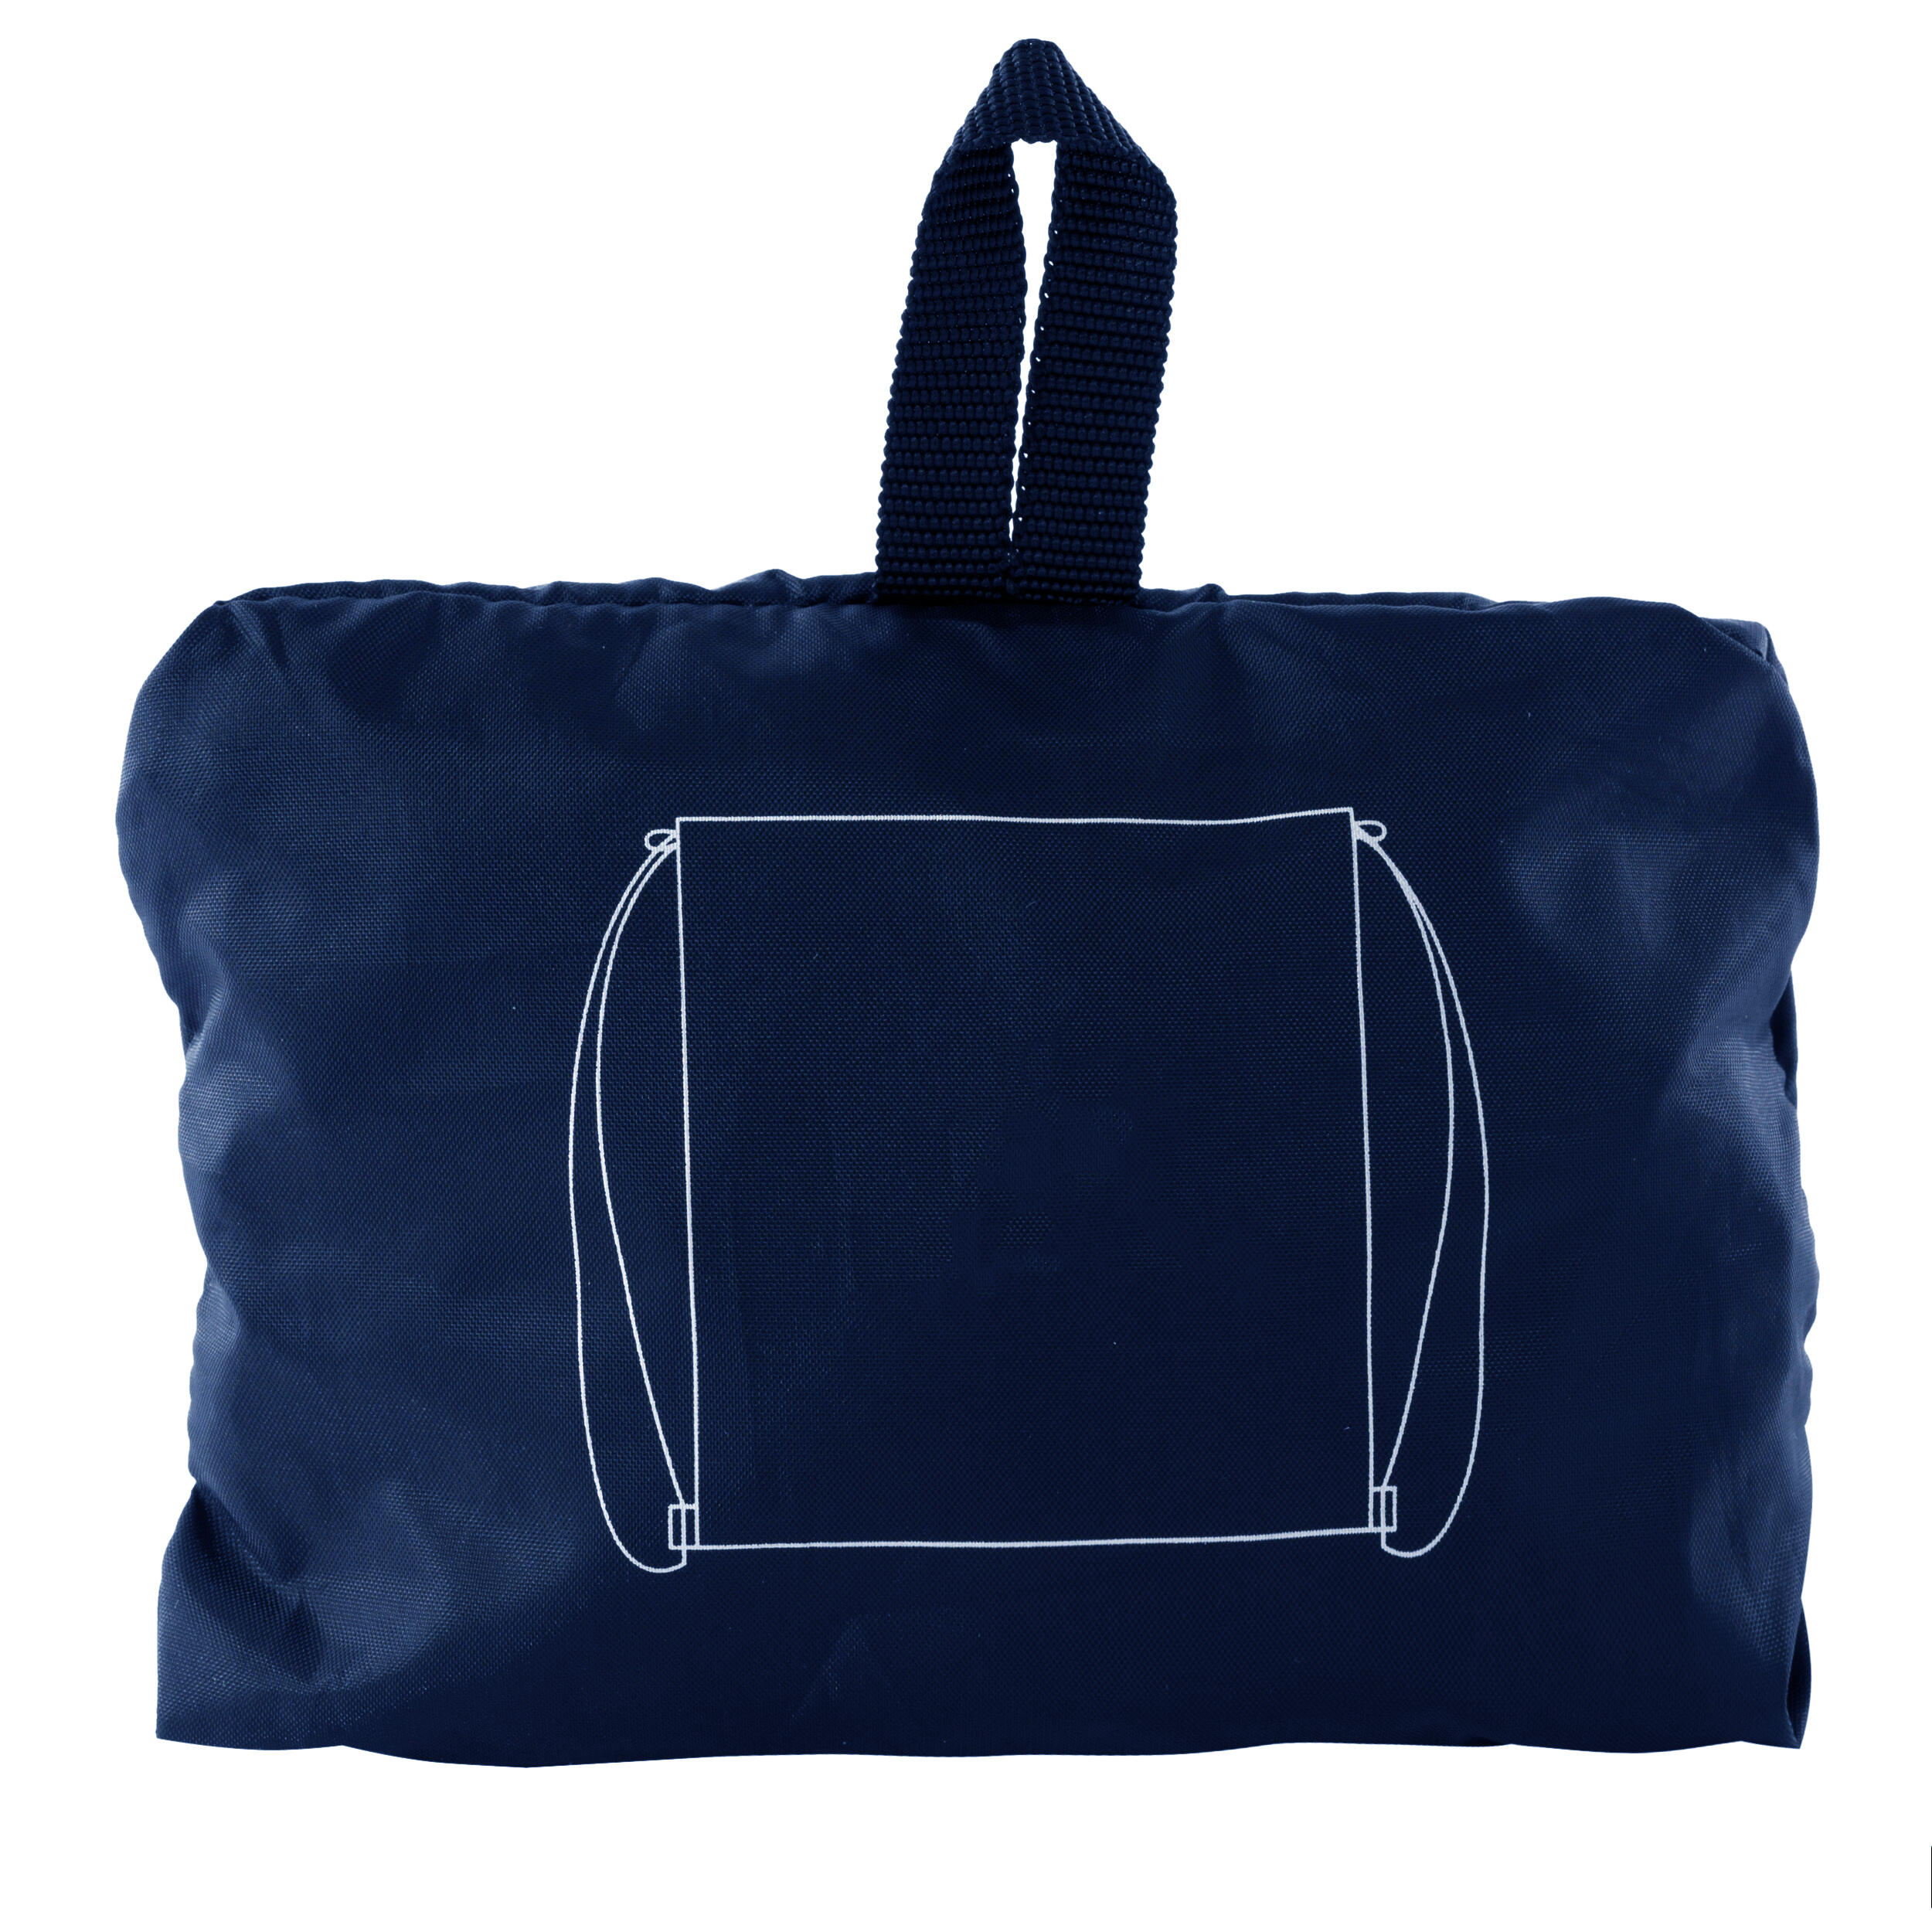 Shoe Bag - Navy Blue 4/5